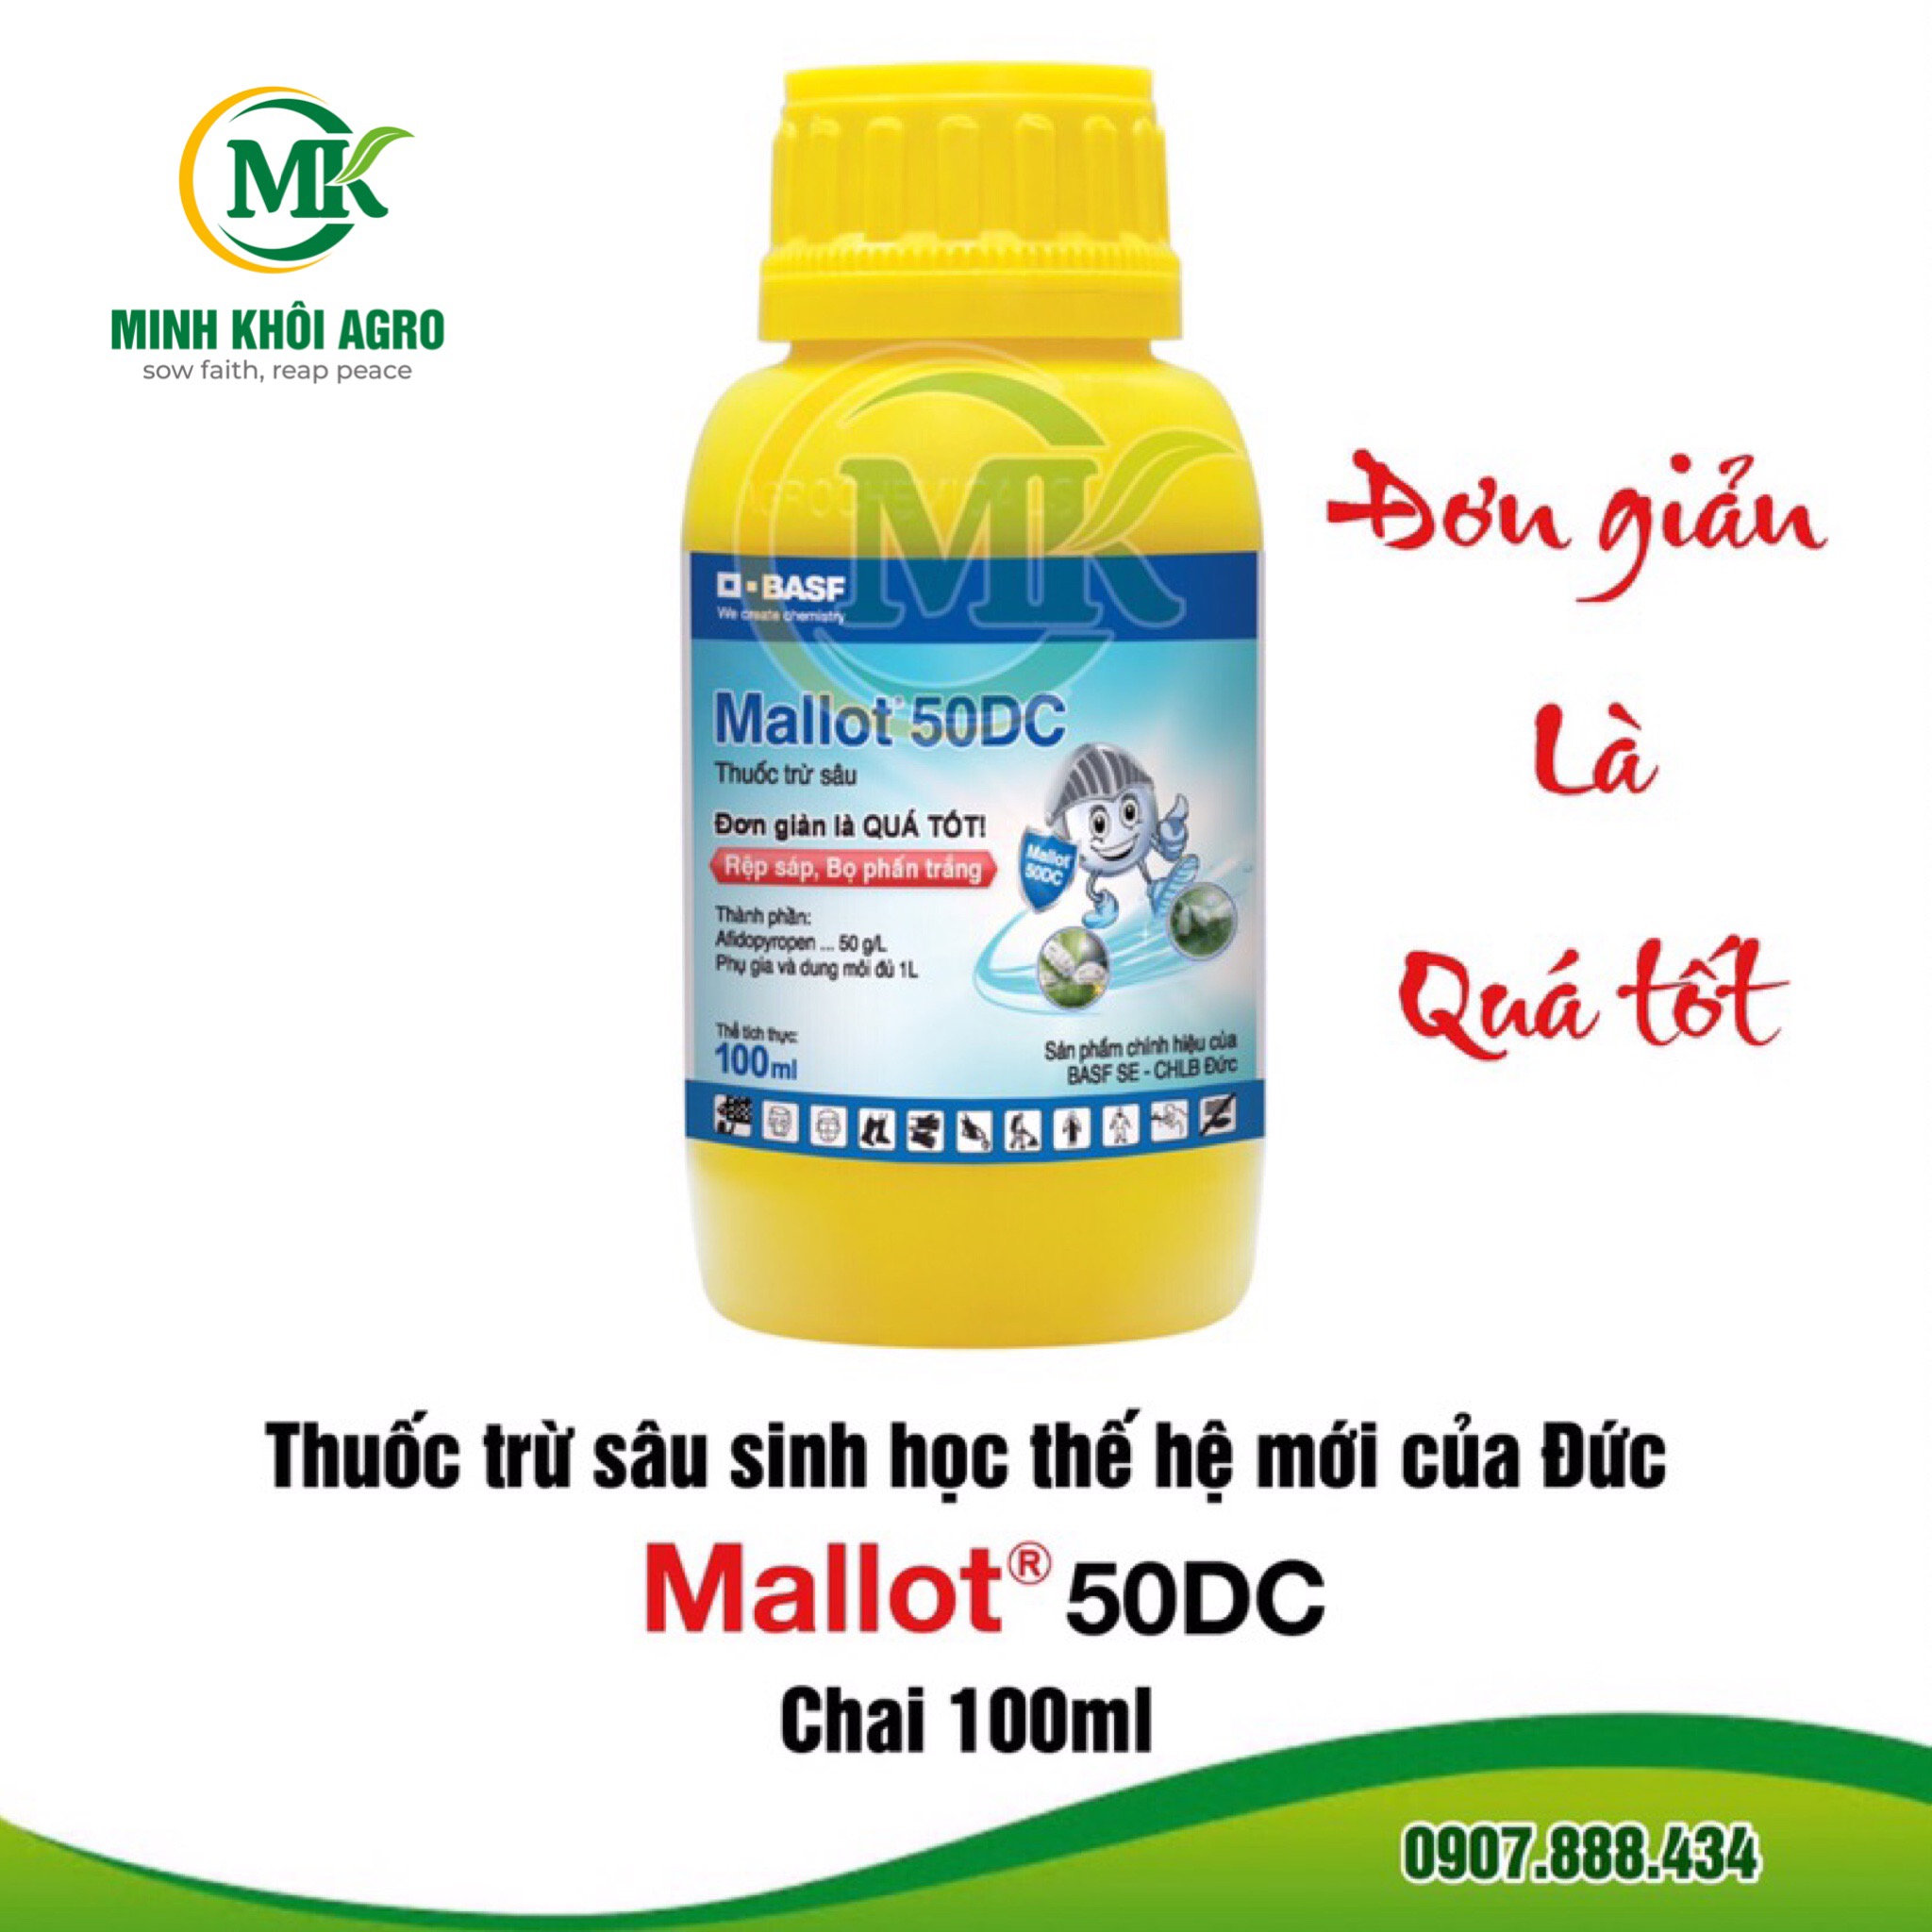 Thuốc trừ rầy sinh học Mallot 50DC - Chai 100ml